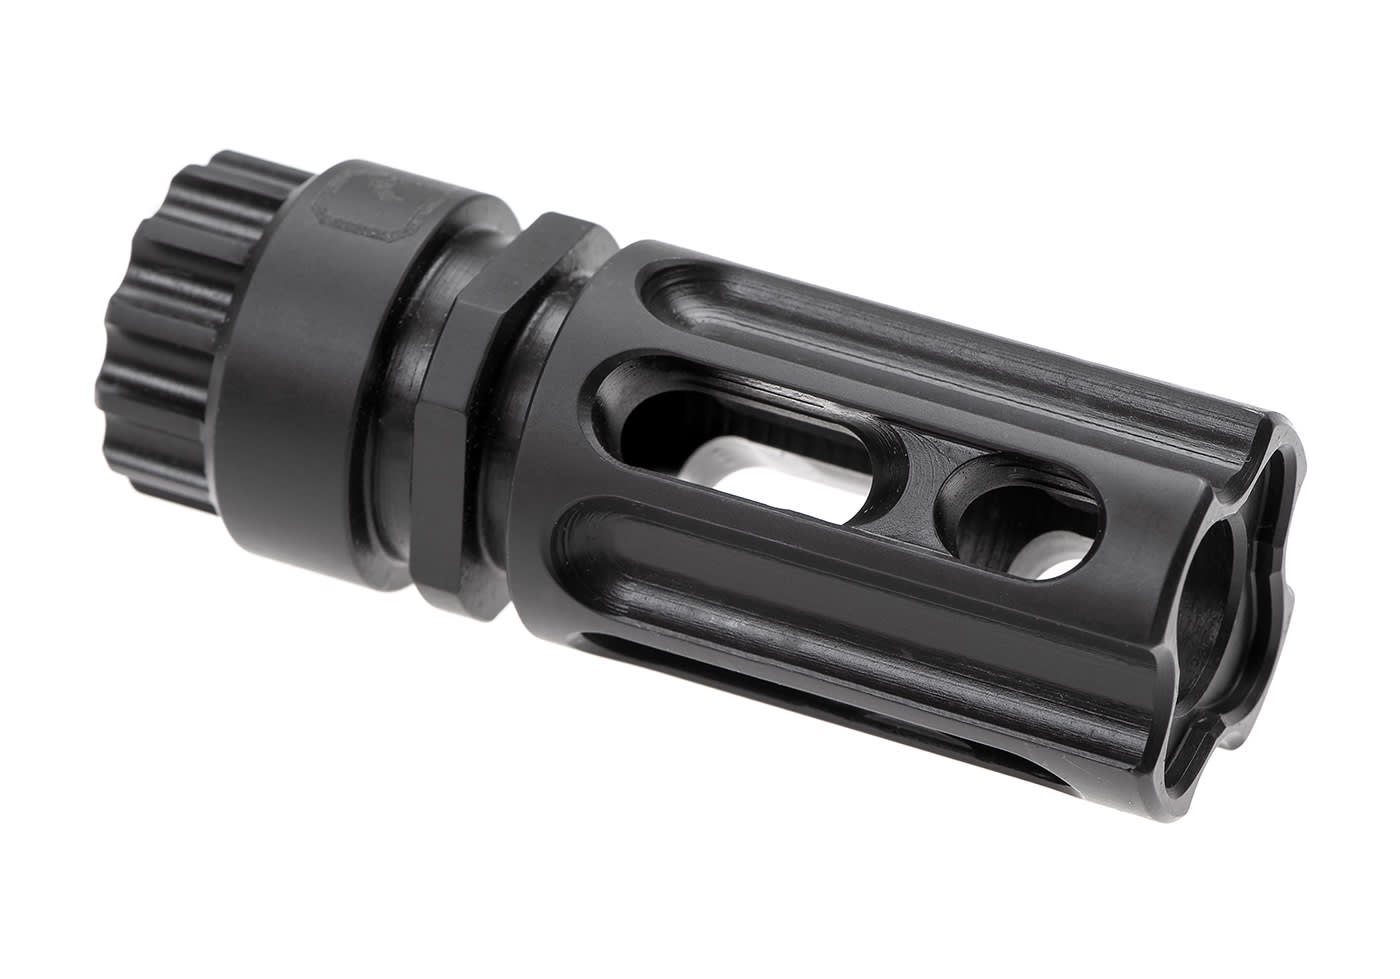 Muzzle Devices  Muzzle Brakes & Compensators for AR 15, AK 47 & More